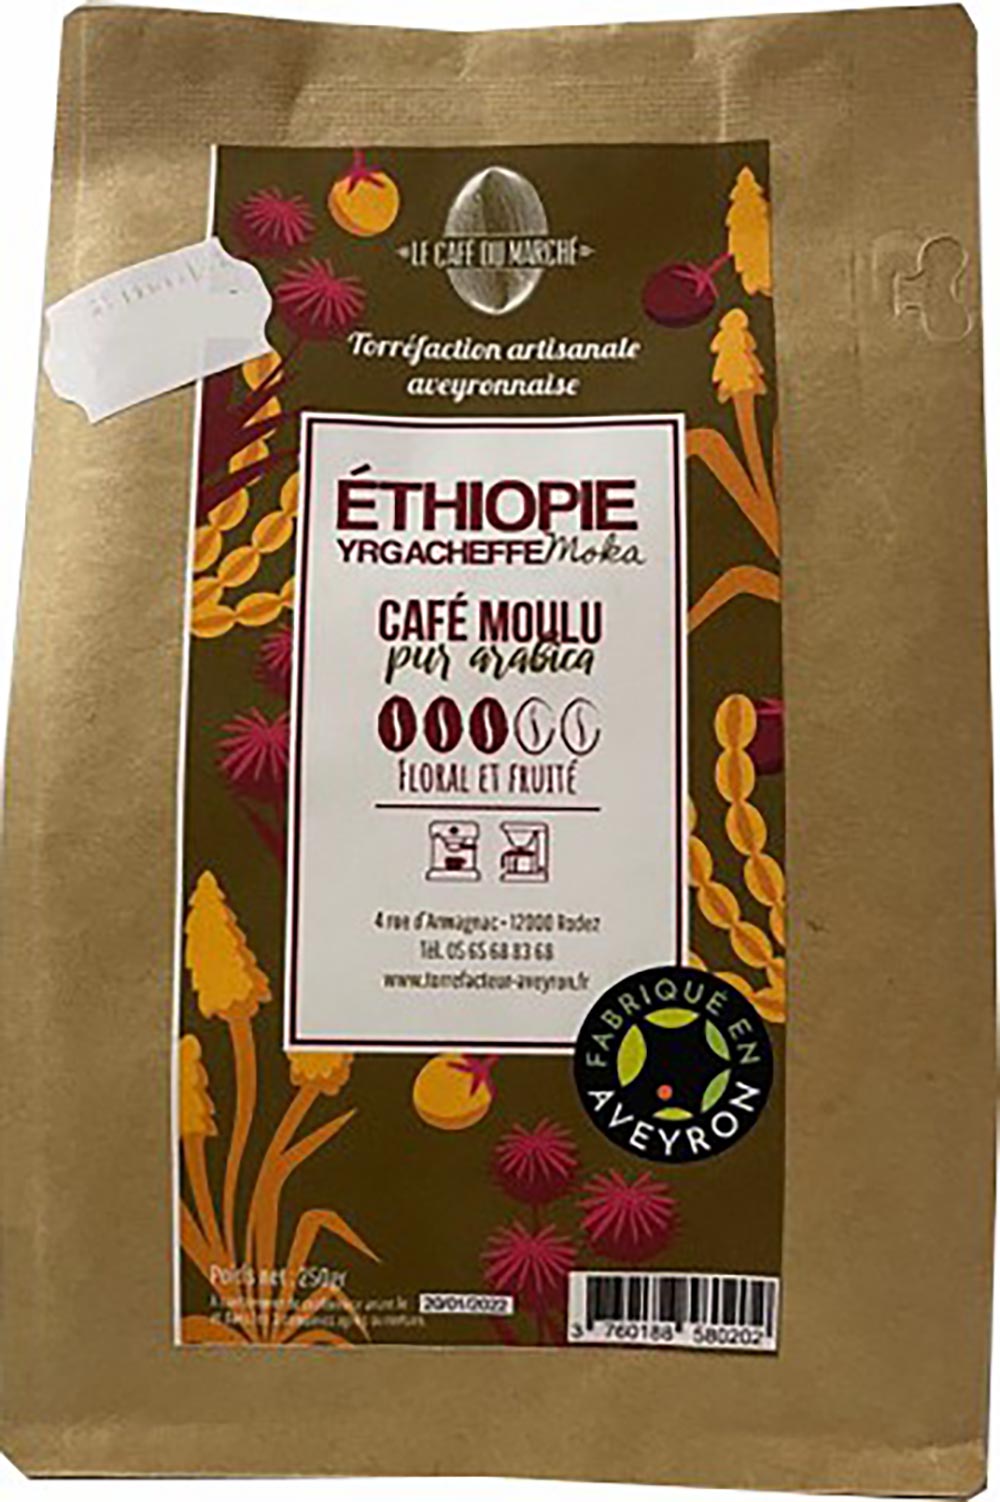 Café moulu pur arabica ETHIOPIE floral et fruité